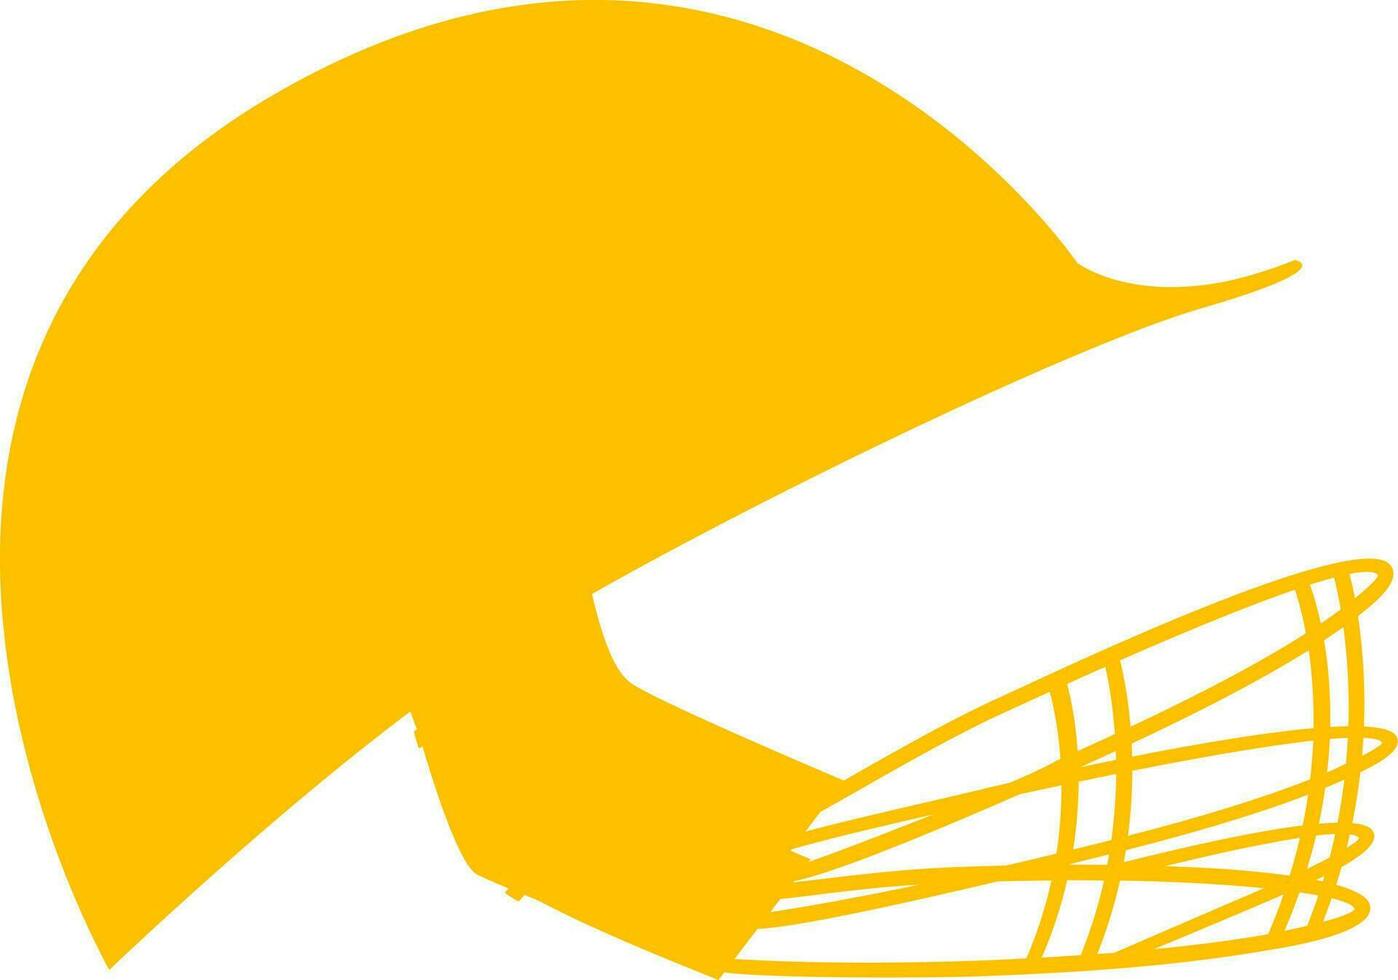 Vektor Symbol von Kricket Helm gemacht mit Gelb Farbe.